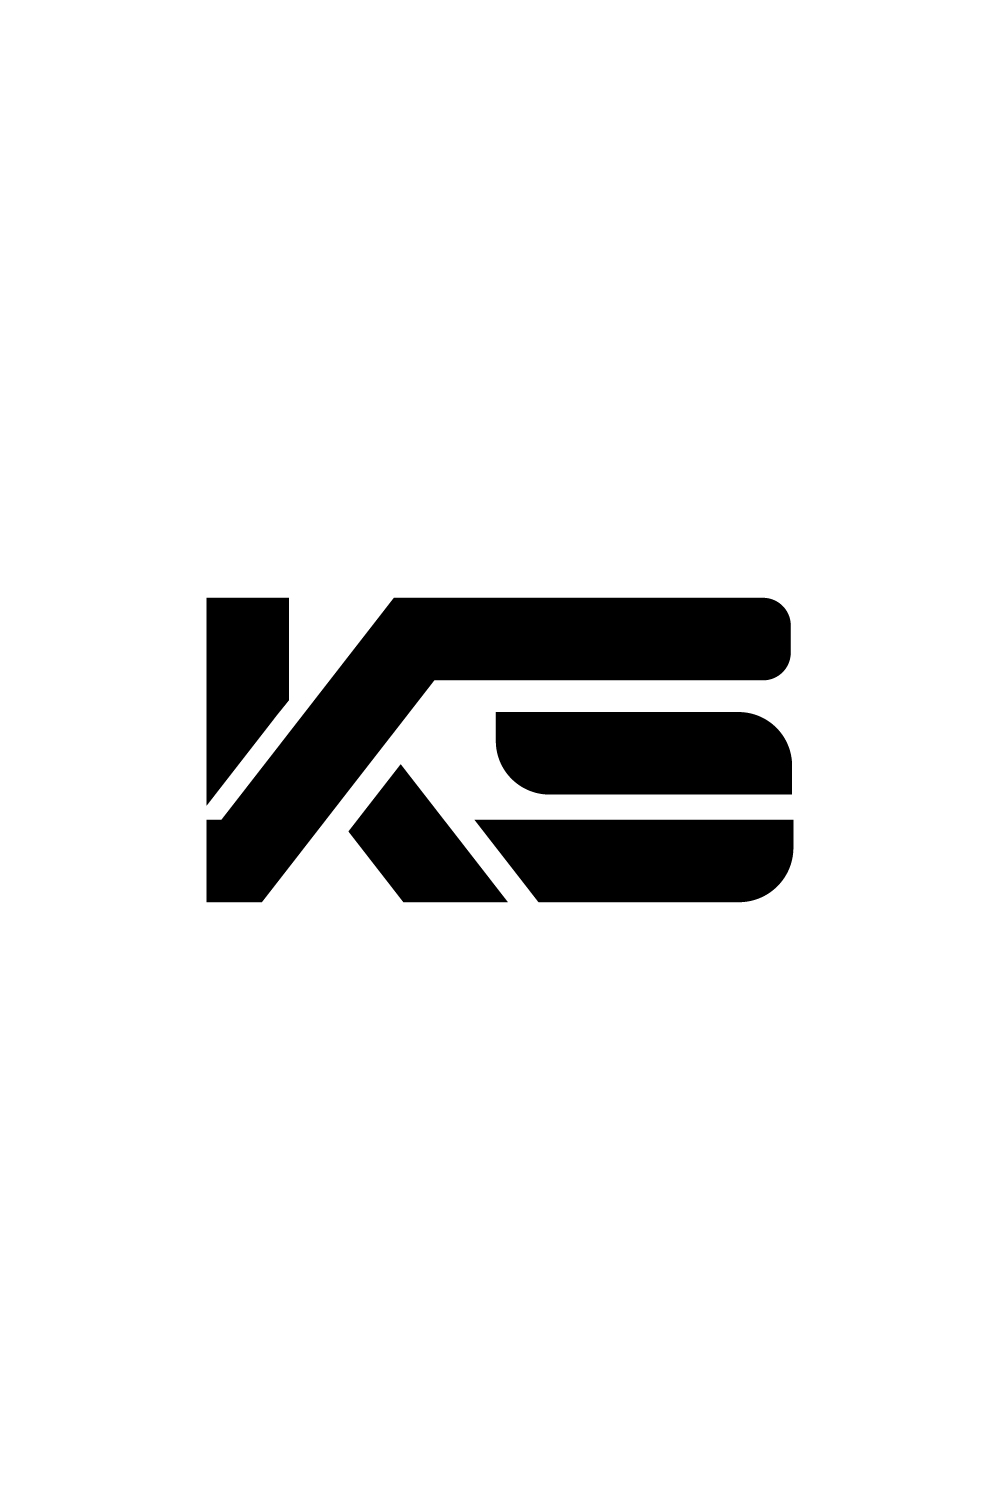 Initial Letter Logo Ks Agriculture Wheat Stock Vector (Royalty Free)  1078101920 | Shutterstock | Letter logo, Logo design art, Logo design love